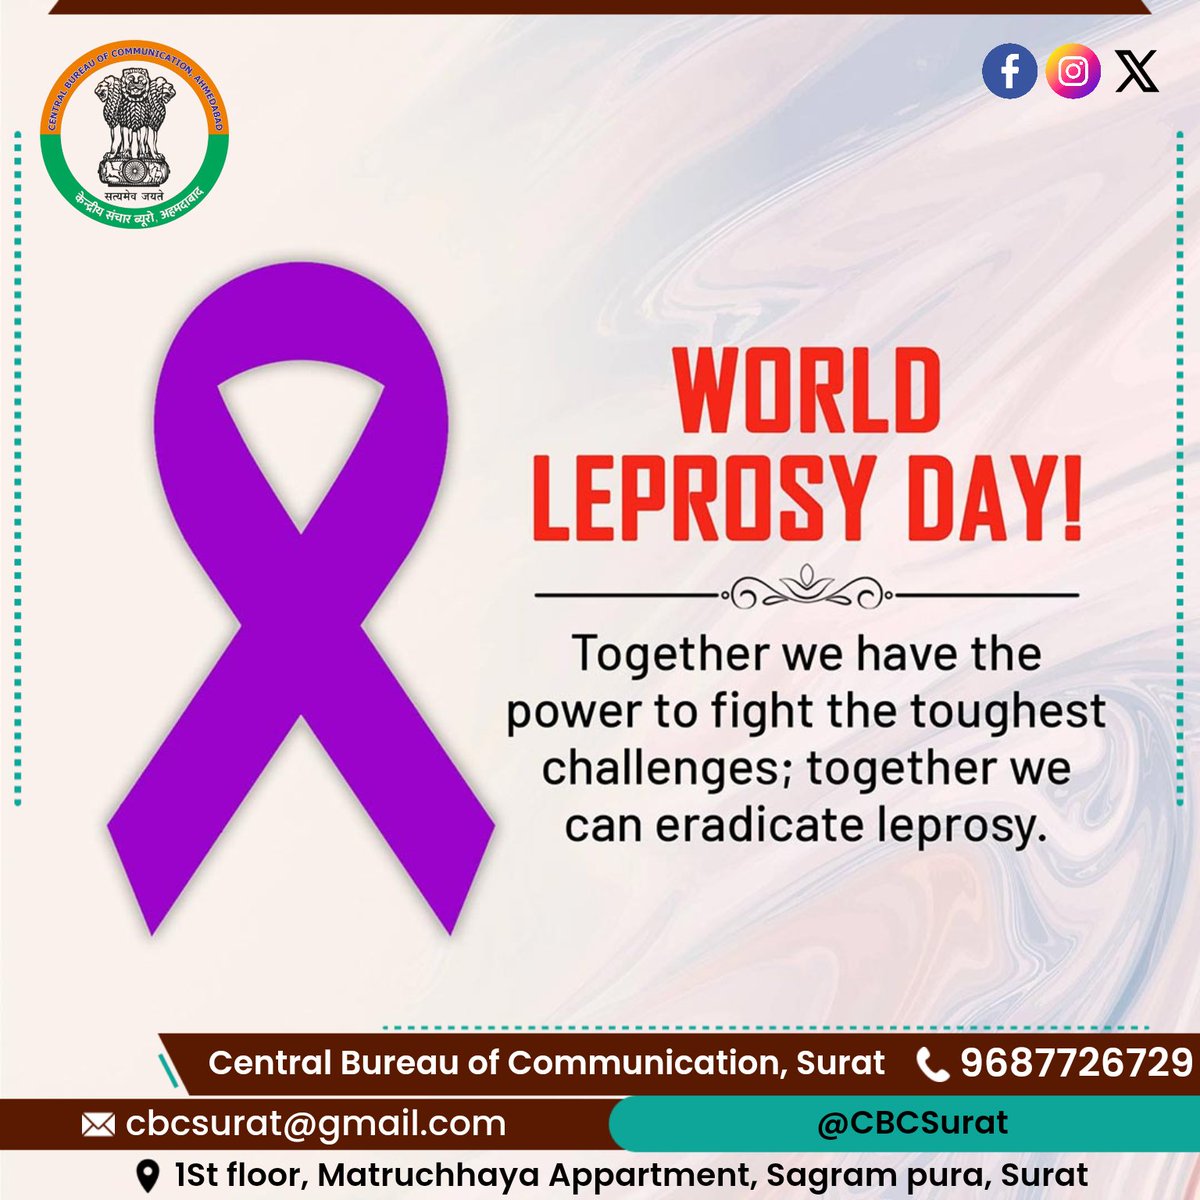 #WorldLeprosyDay - Raise awareness on prevention of Leprosy 
#leprosy